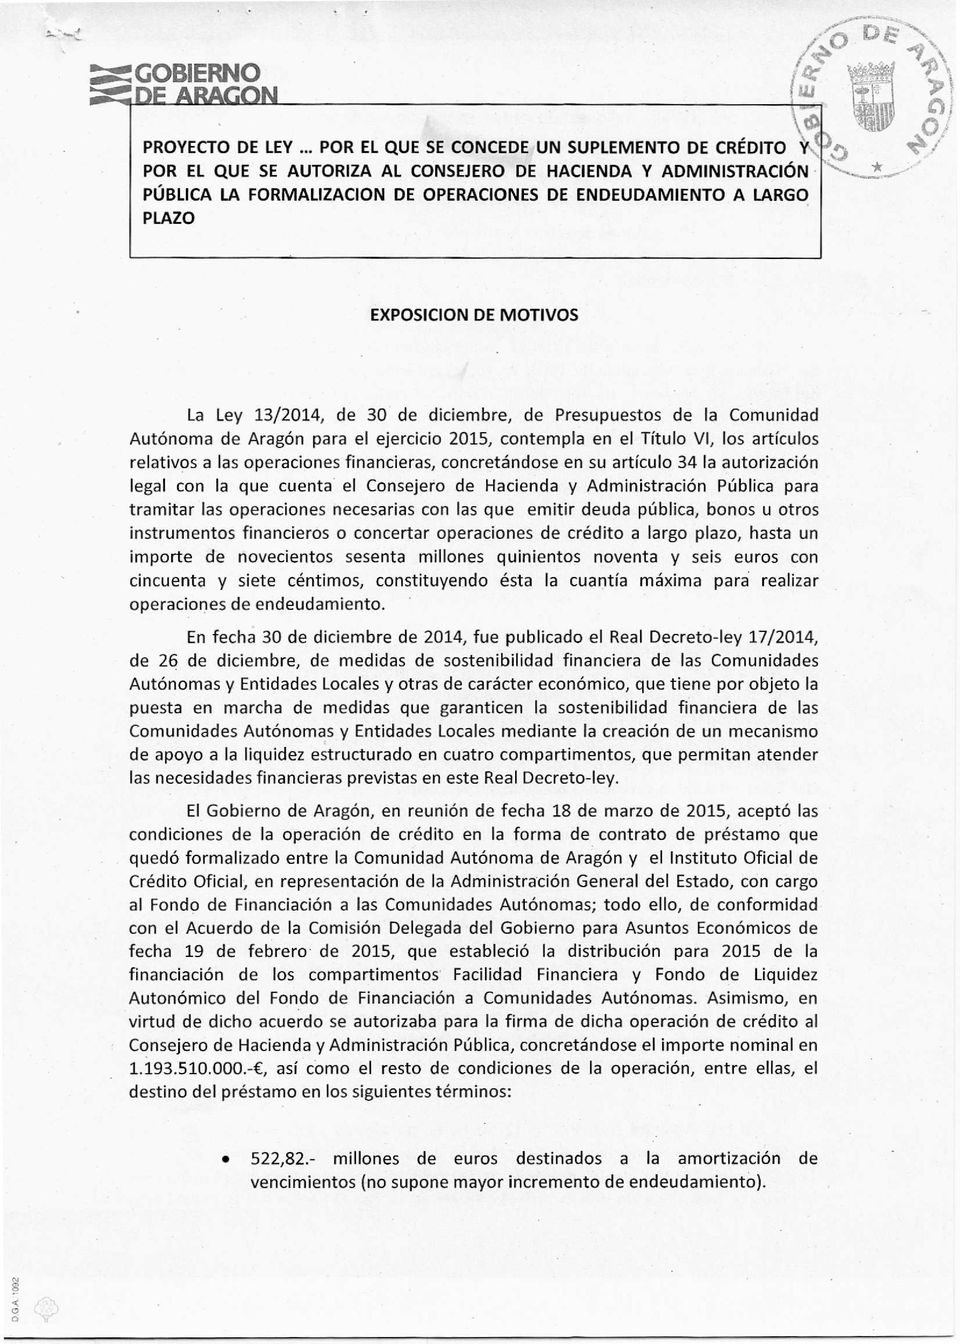 EXPOSICION DE MOTIVOS La Ley 13/2014, de 30 de diciembre, de Presupuestos de la Comunidad Autónoma de Aragón para el ejercicio 2015, contempla en el Título VI, los artículos relativos a las